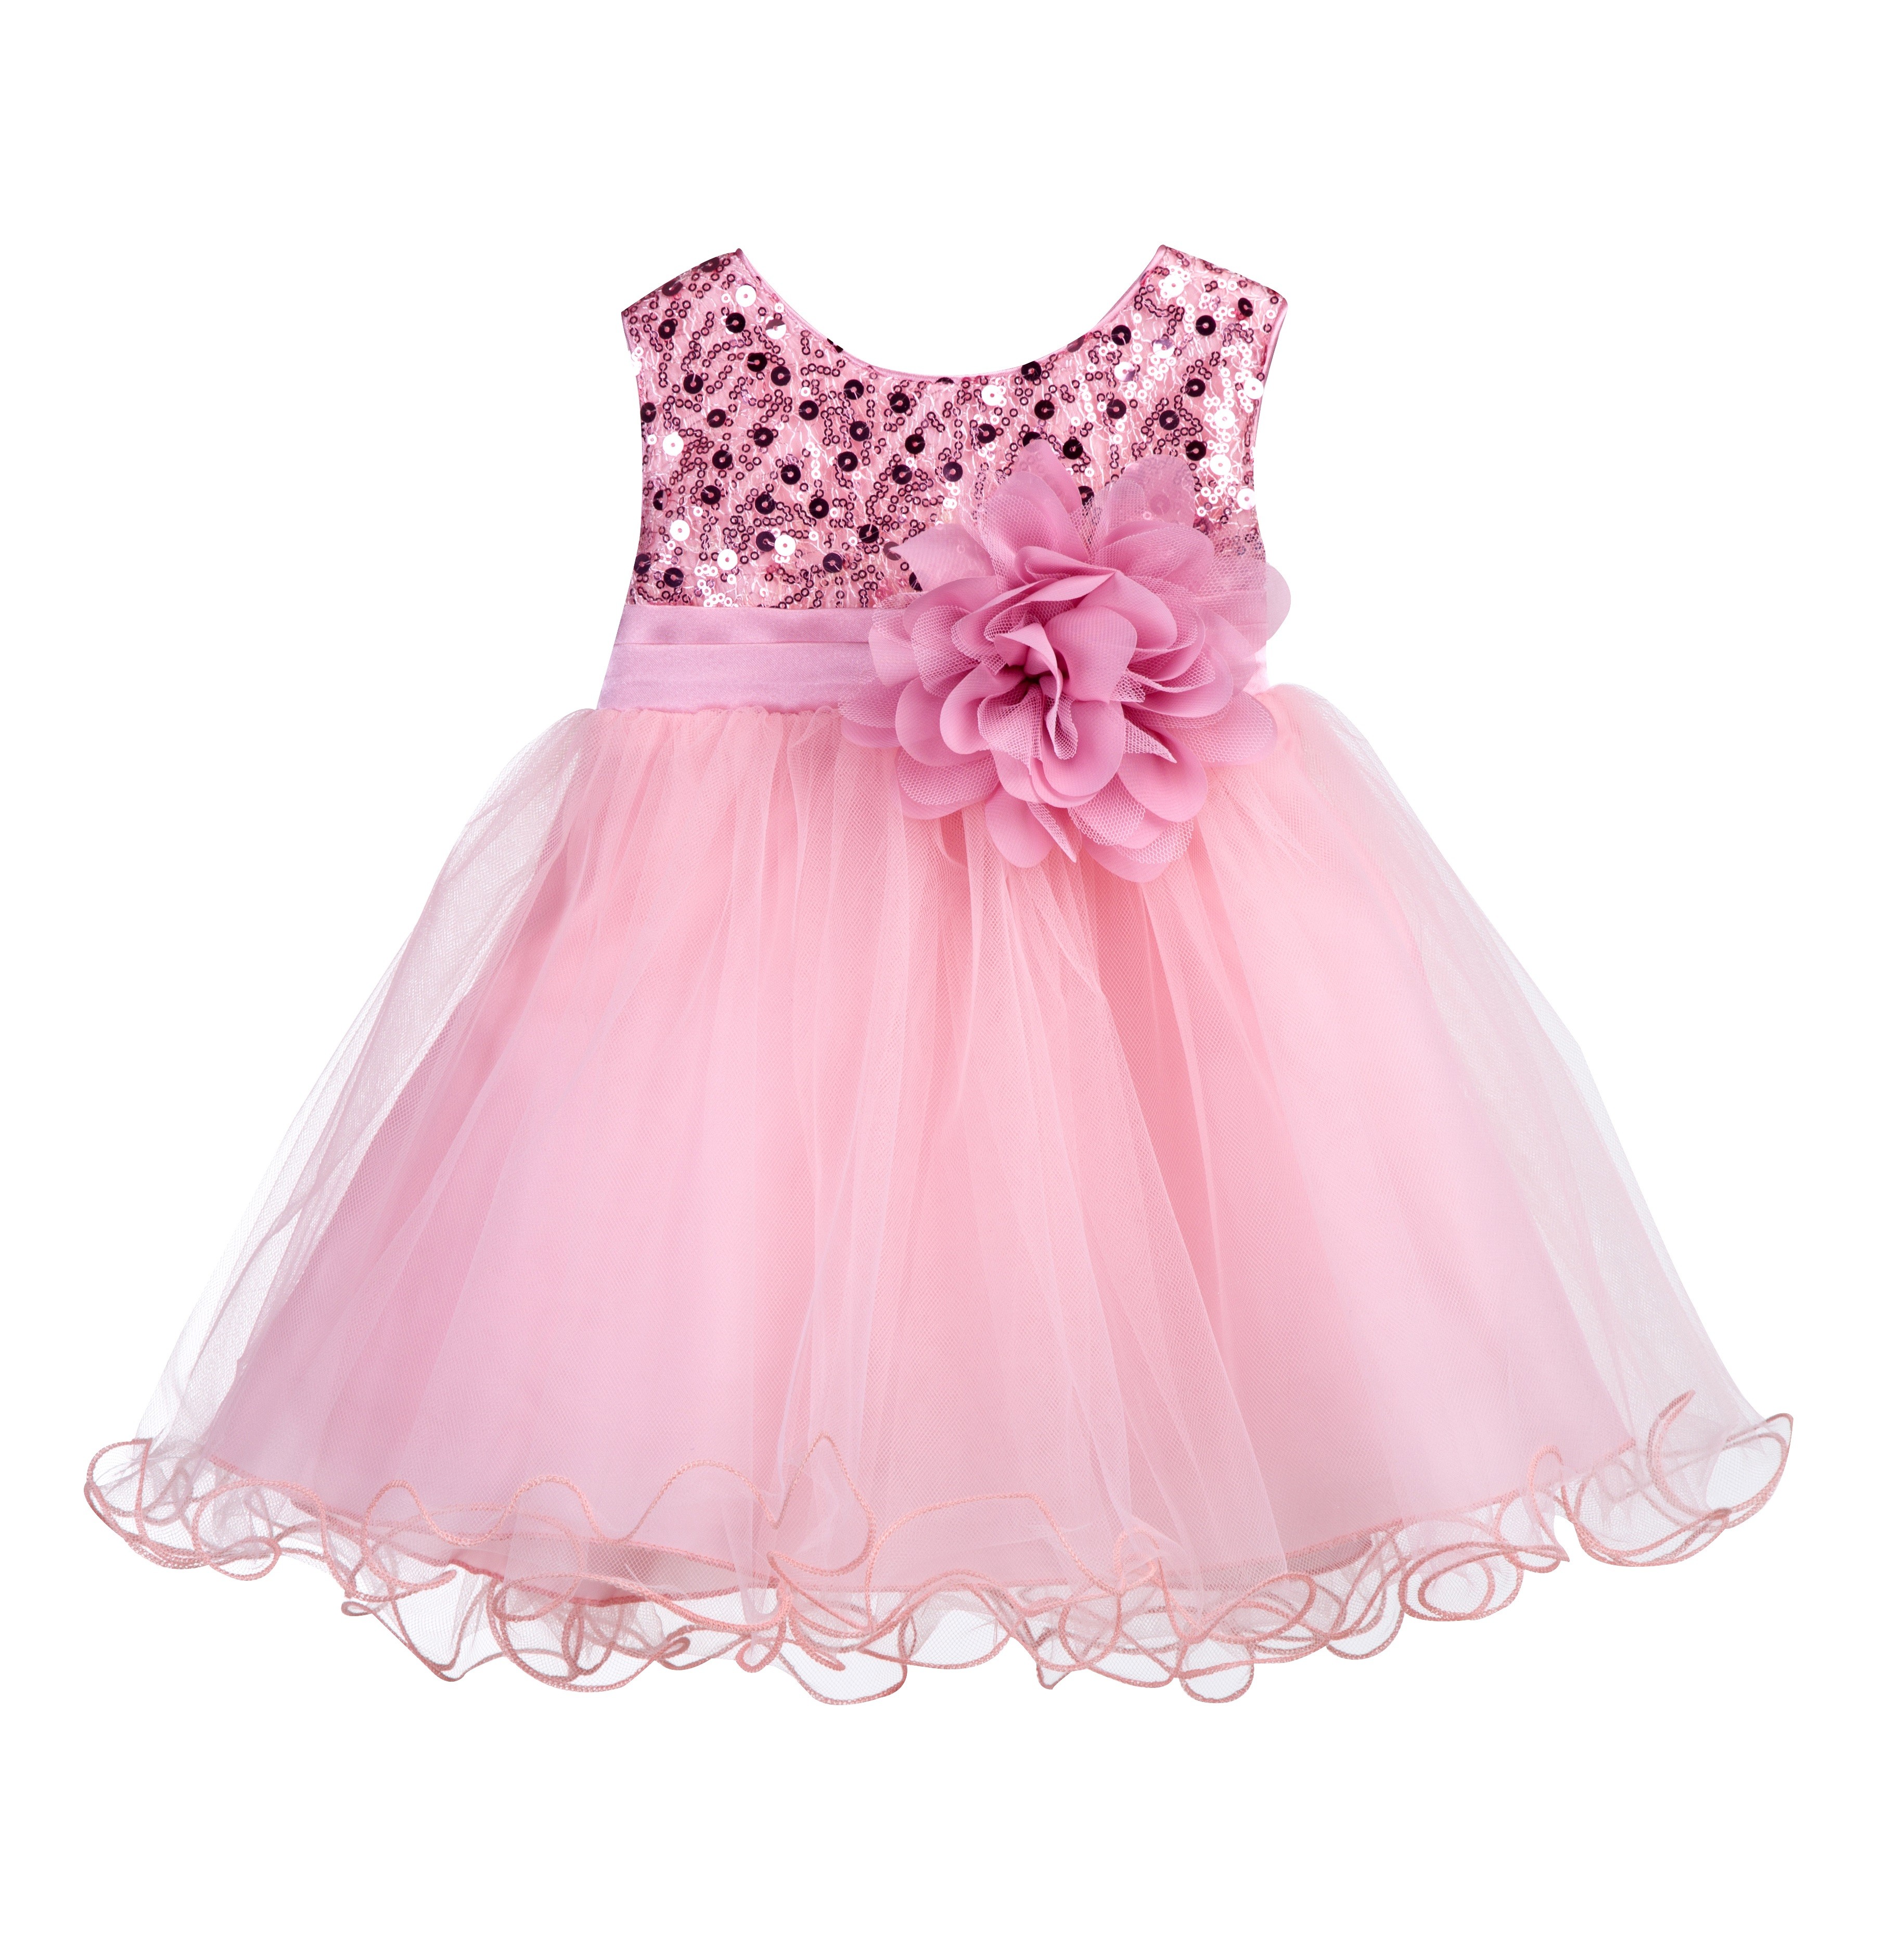 Dusty Rose Glitter Sequin Tulle Flower Girl Dress Formal Princess B-011NF